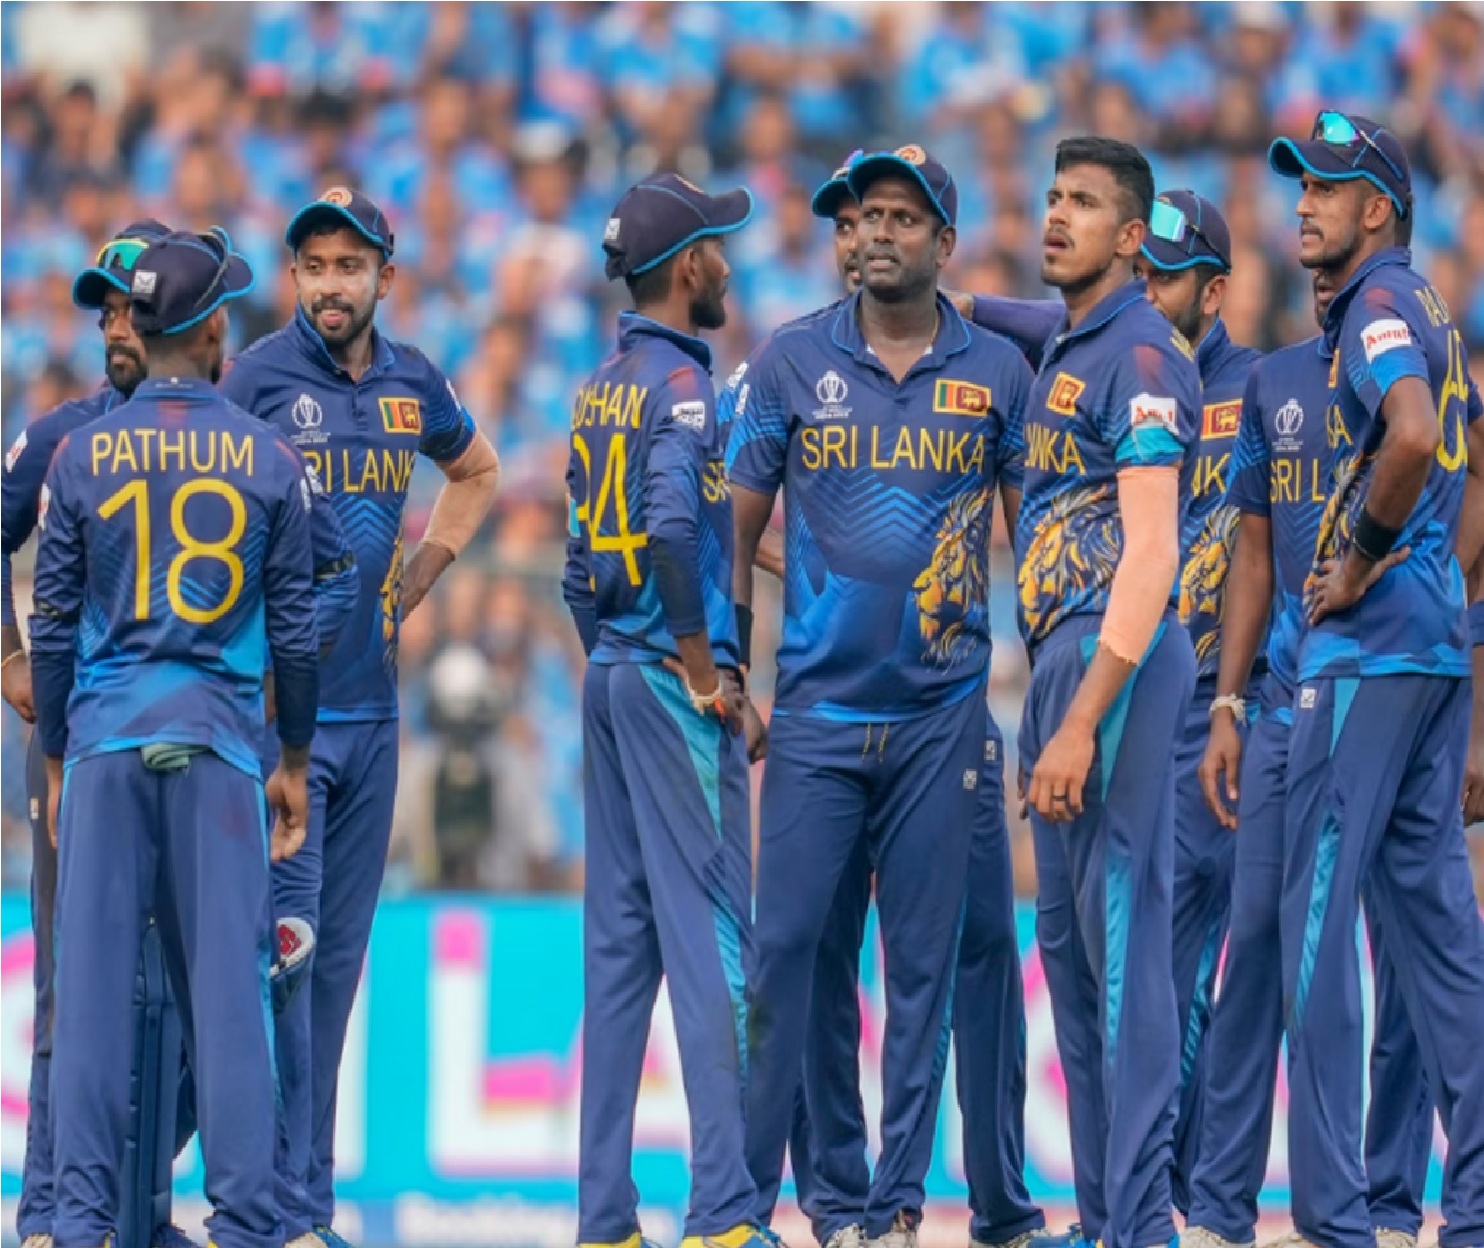 World Cup: श्रीलंका की टीम घोषित, भारत के छक्के छुड़ाने वाला गेंदबाज शामिल, 2 चोटिल स्पिनर भी चुने गए